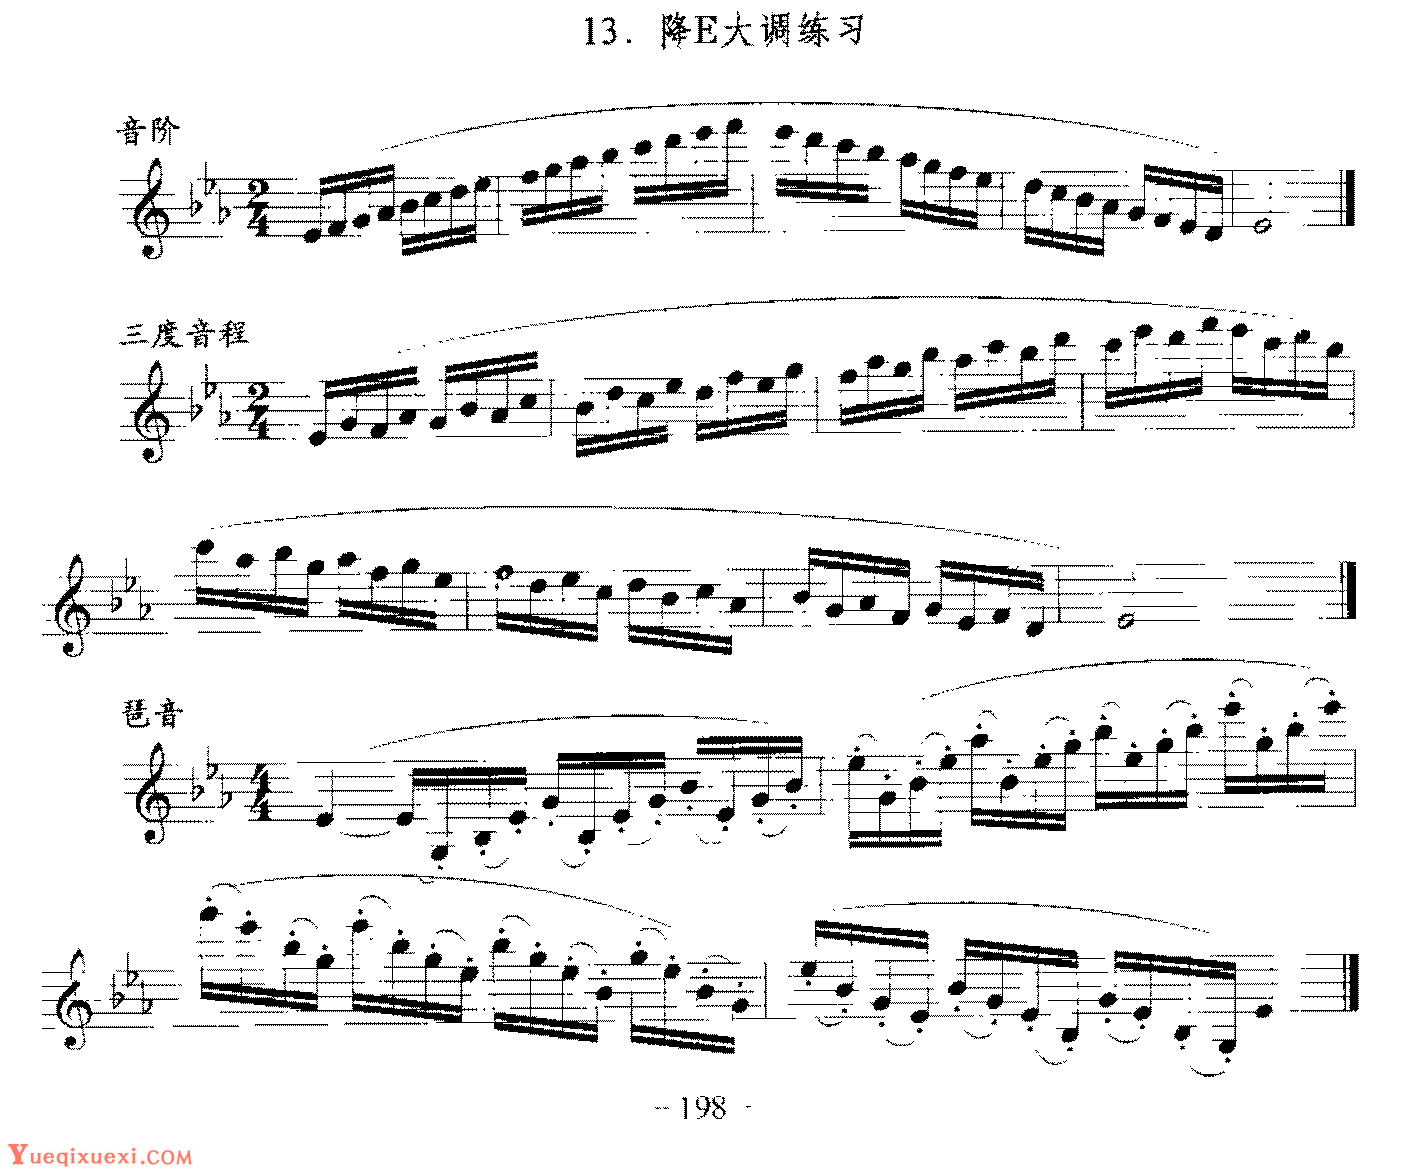 单簧管日常基础技术练习曲《降E大调练习